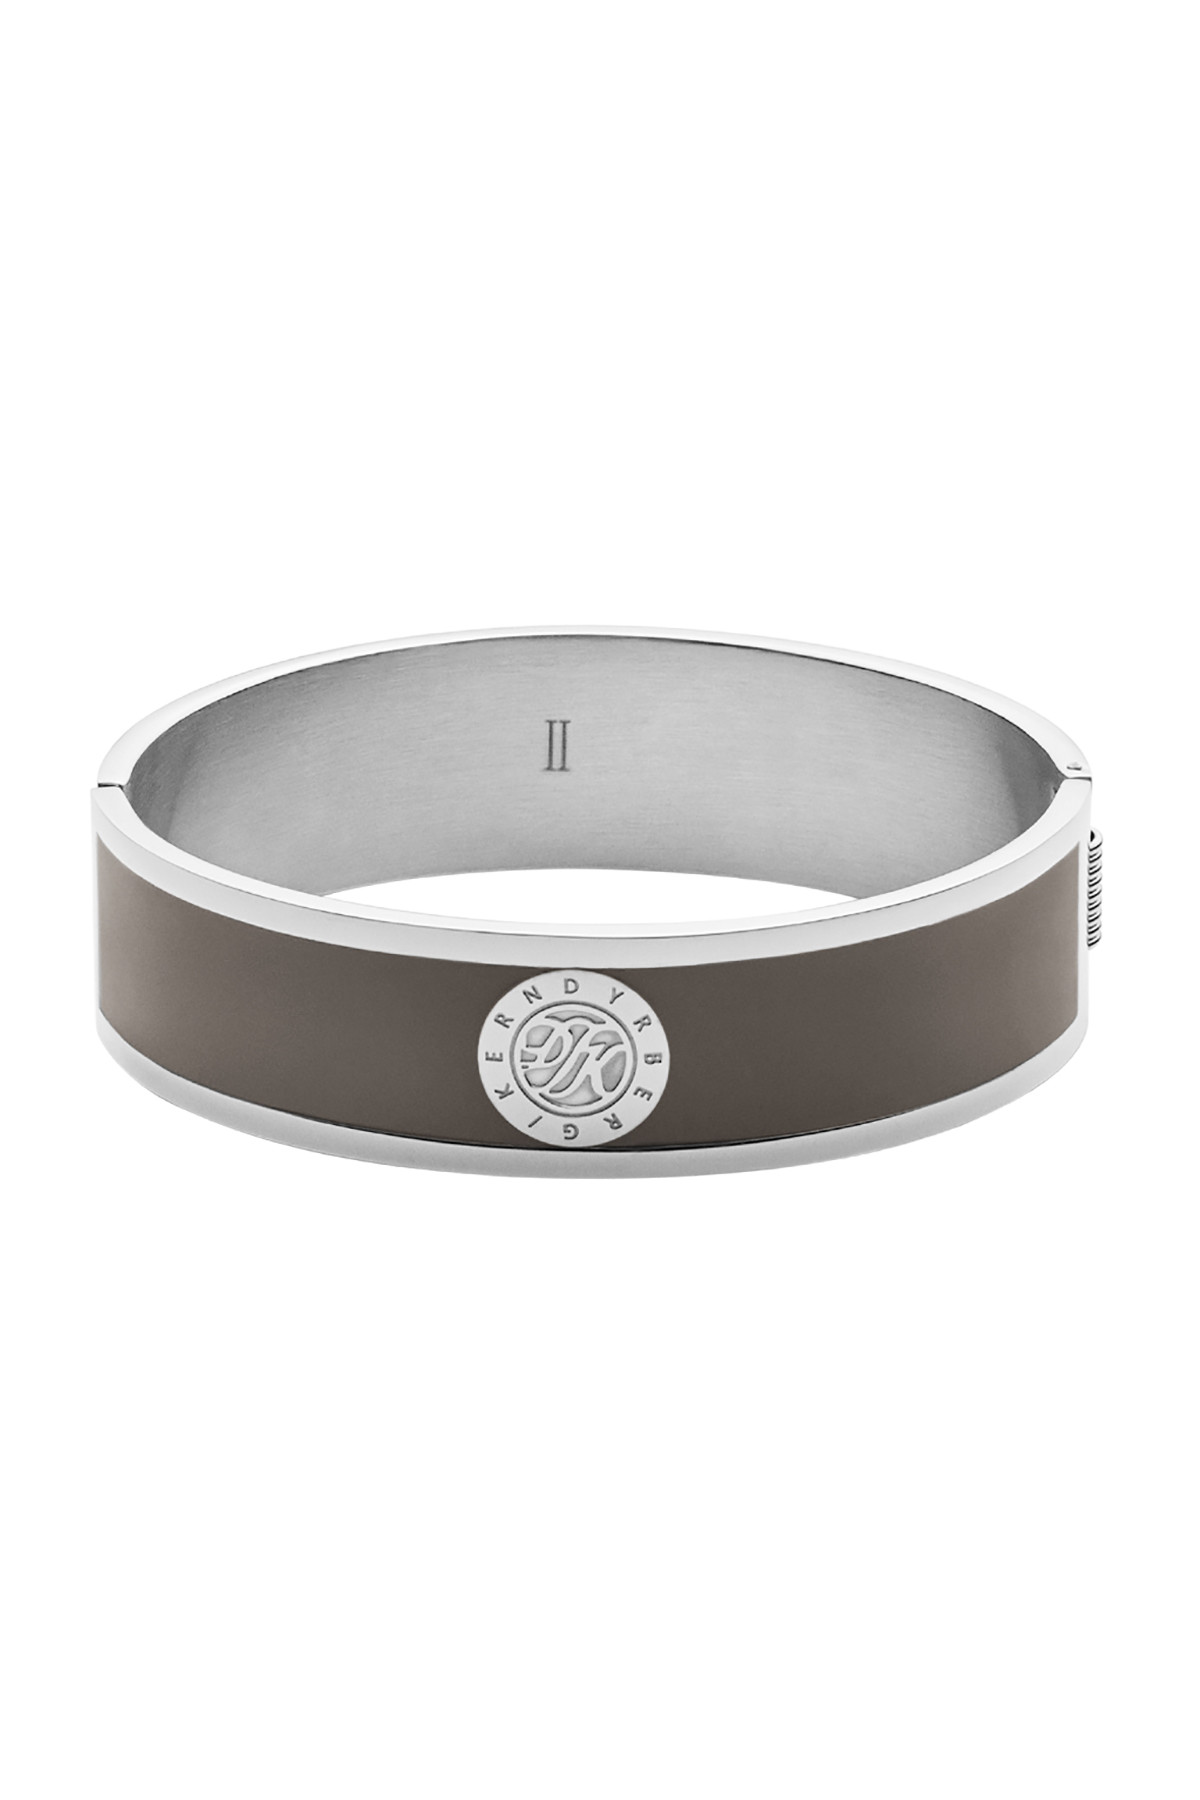 Dyrberg/Kern Jovika Bracelet, Color: Silver/Grey, Ii, Women